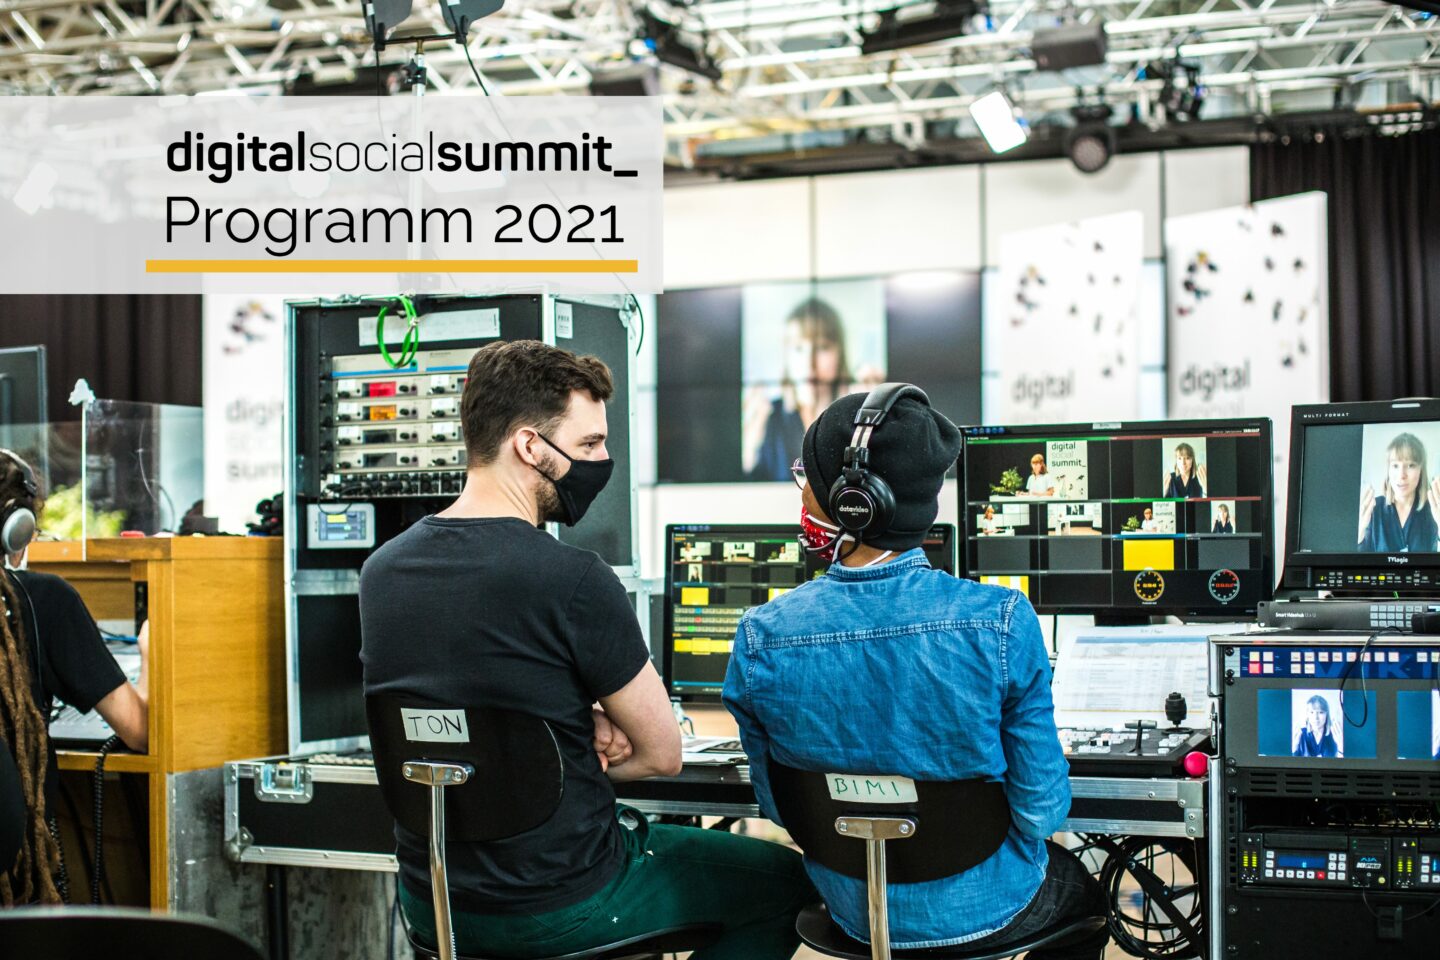 Es ist eine Studioszene zu sehen. Zwei Techniker sitzen nebeneinander vor Monitoren und Schaltpulten. Beide tragen eine Maske und scheinen in ein Gespräch vertieft zu sein. Im Hintergrund ist das Studioset des Digital Social Summits 2020 zu sehen. Oben rechts steht das Logo des Digital Social Summits und Programm 2021.